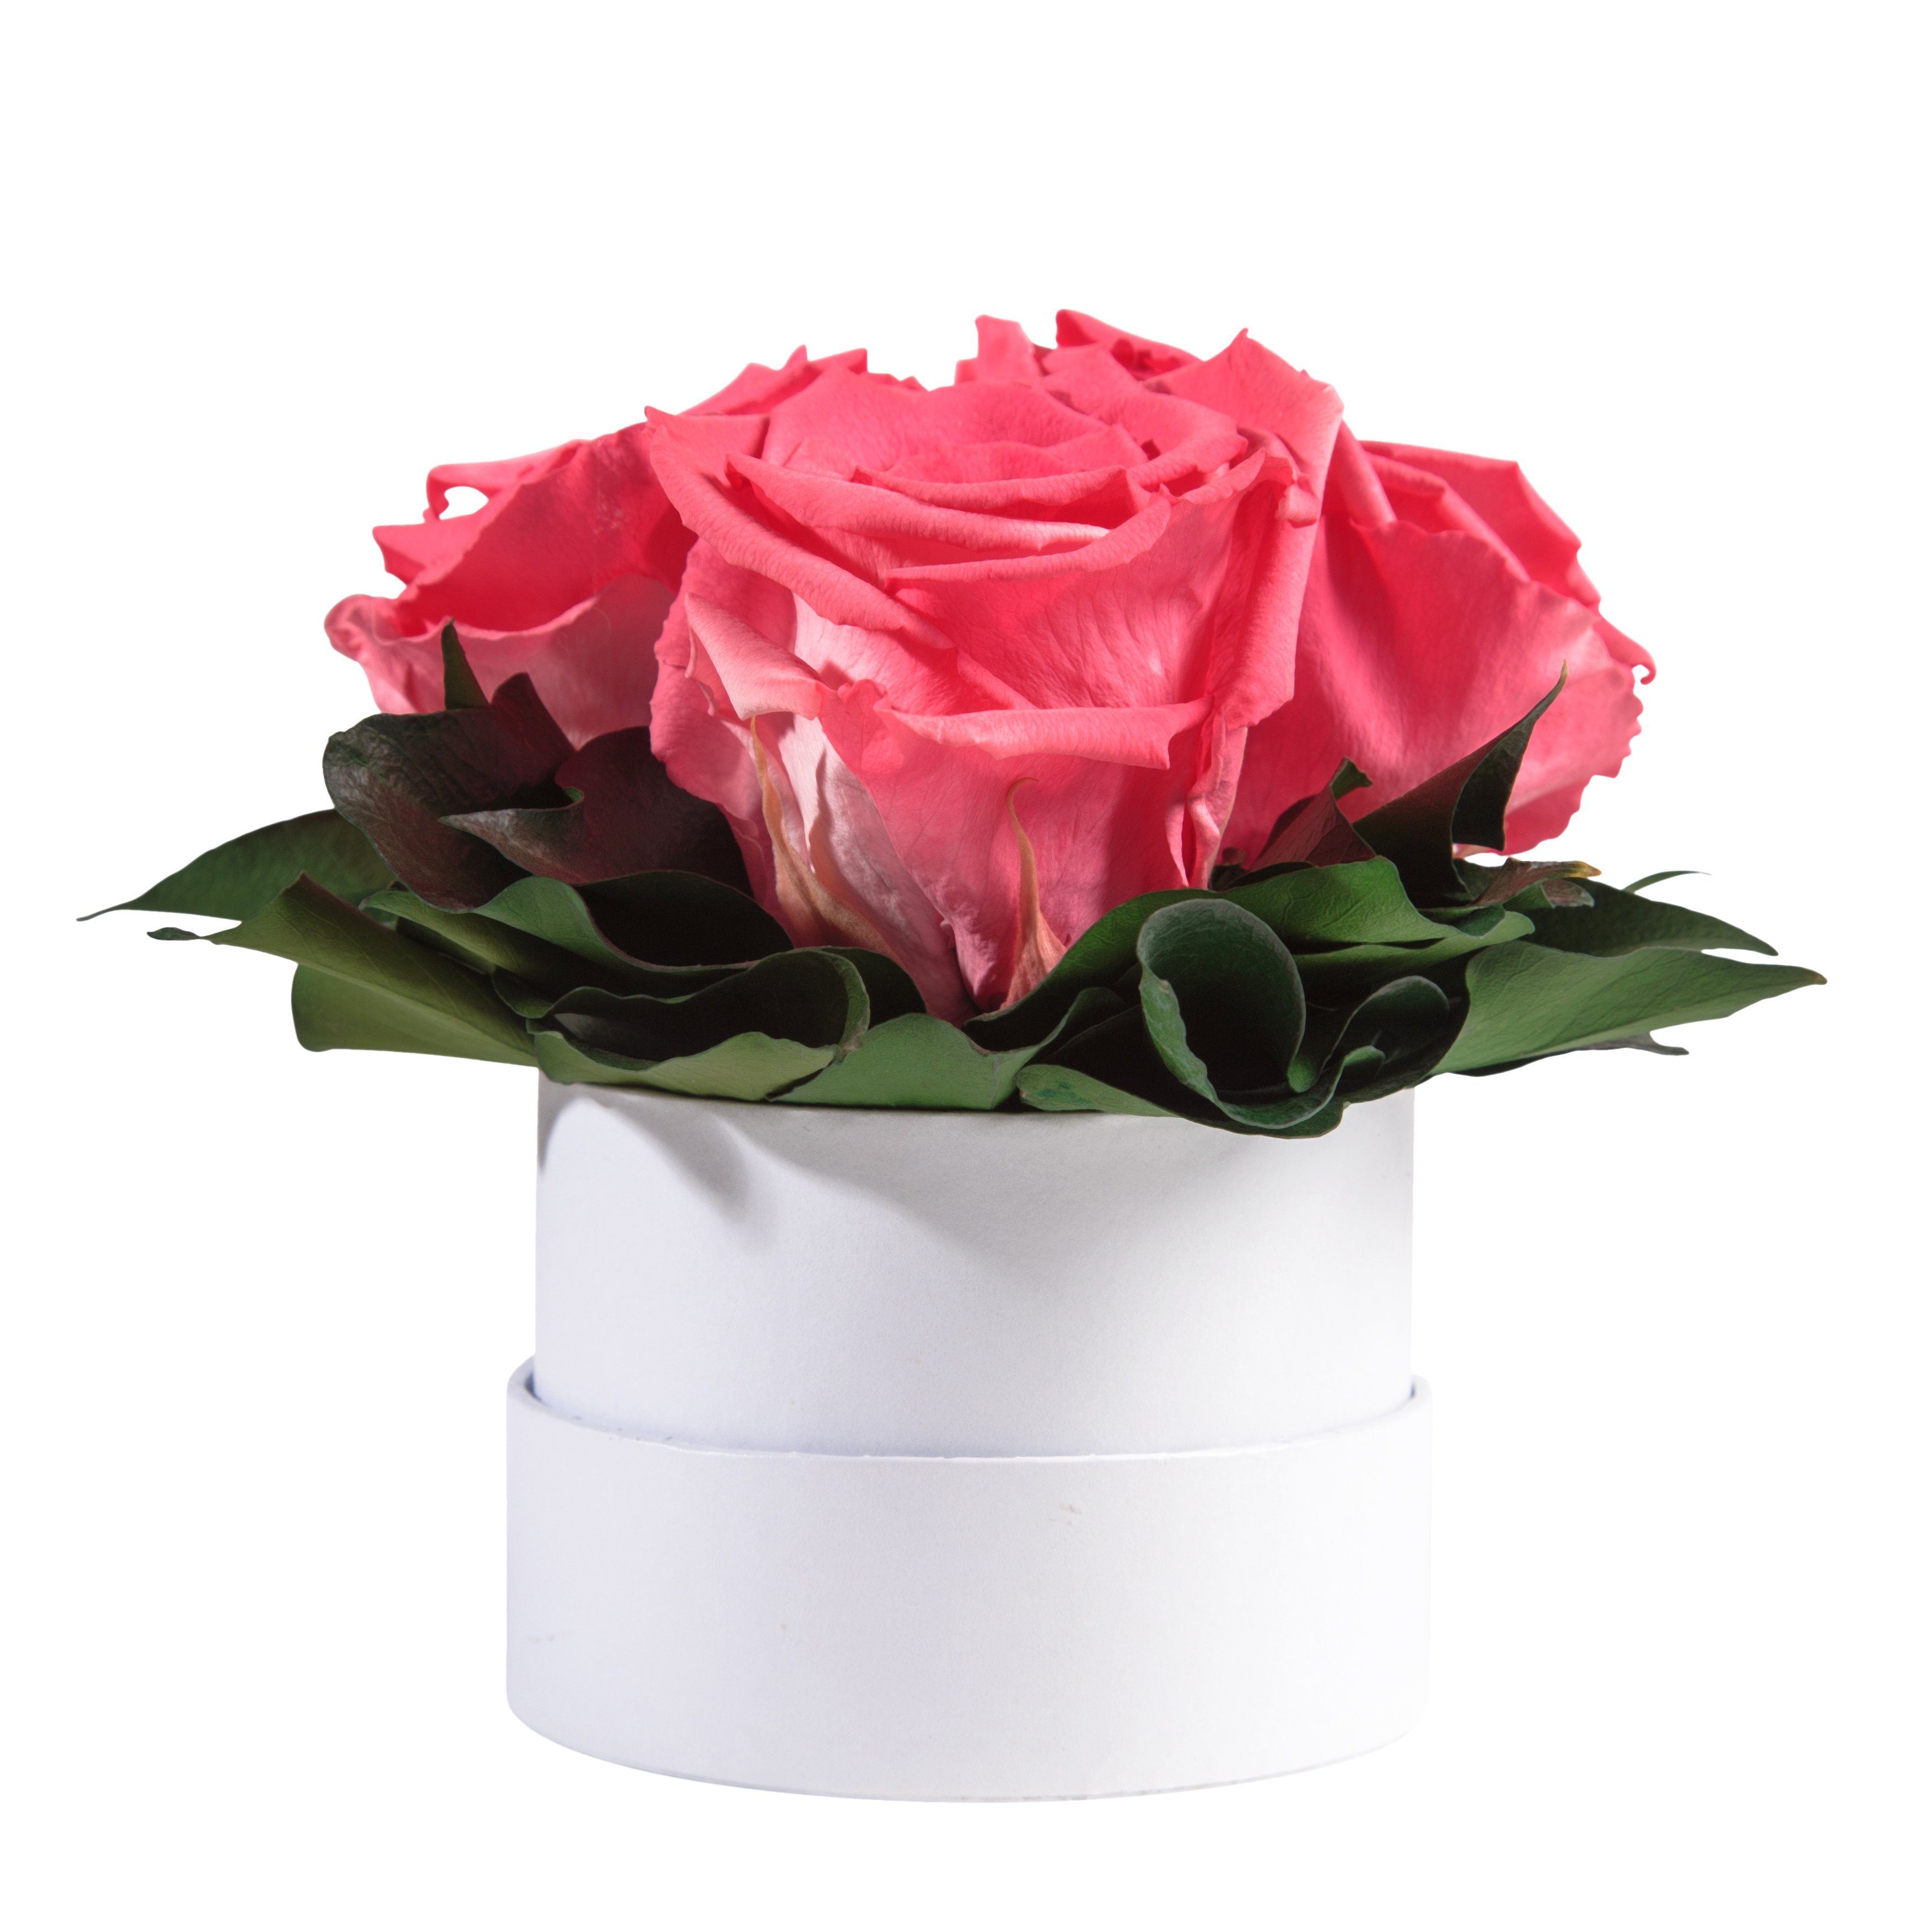 Kunstblume Infinity Rosenbox weiß rund 3 echte Rosen konserviert Rose, ROSEMARIE SCHULZ Heidelberg, Höhe 10 cm, Geschenk für Sie Rosen Korall